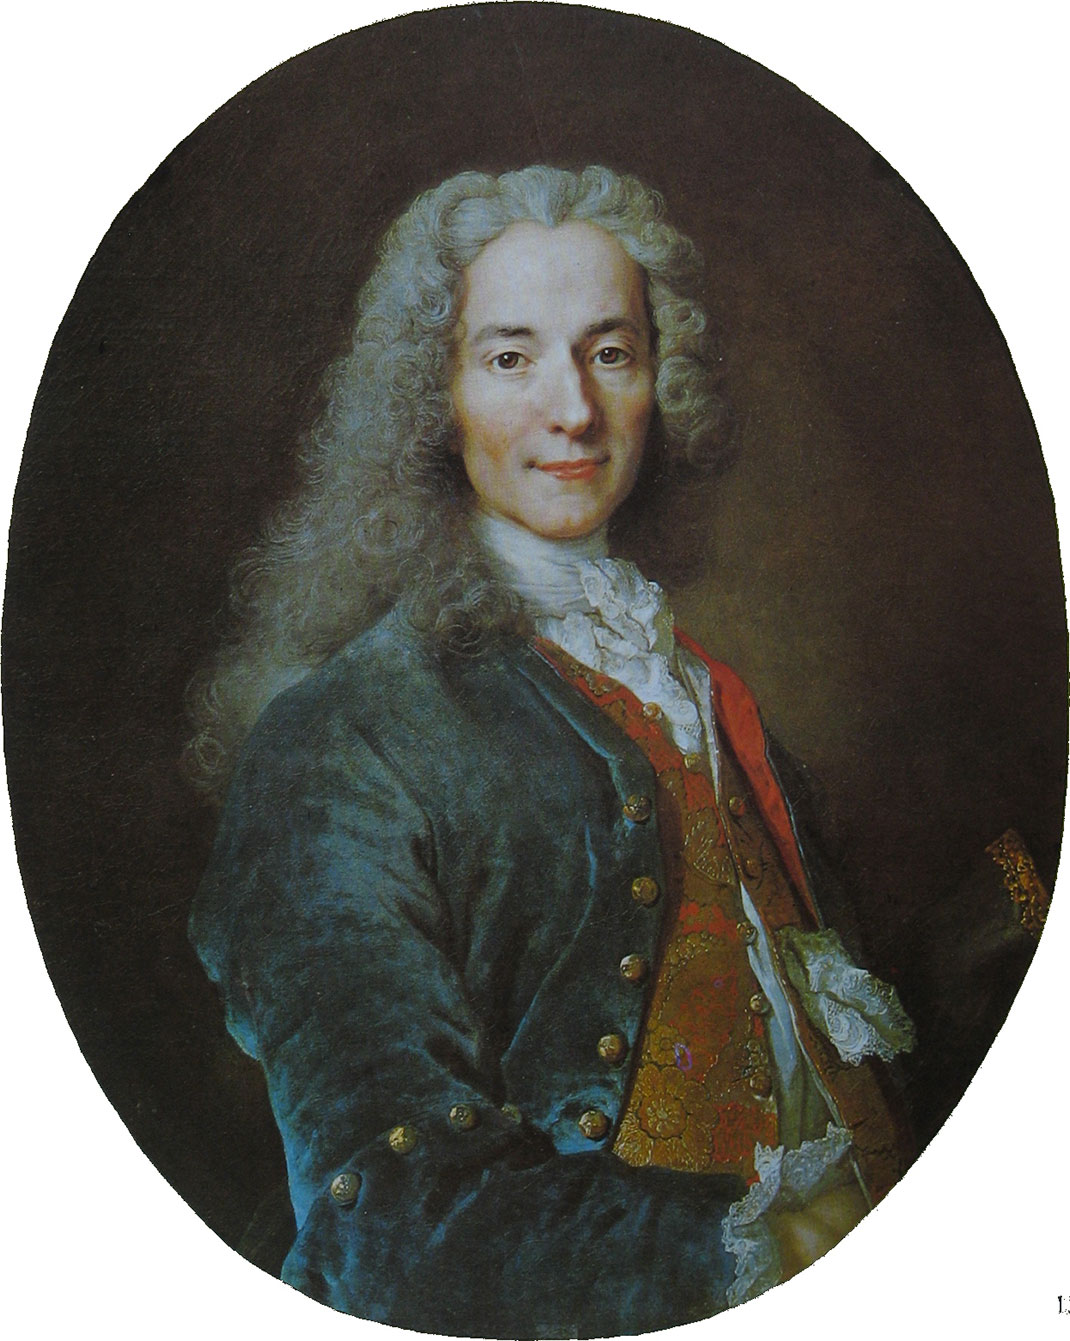 Portrait de Voltaire